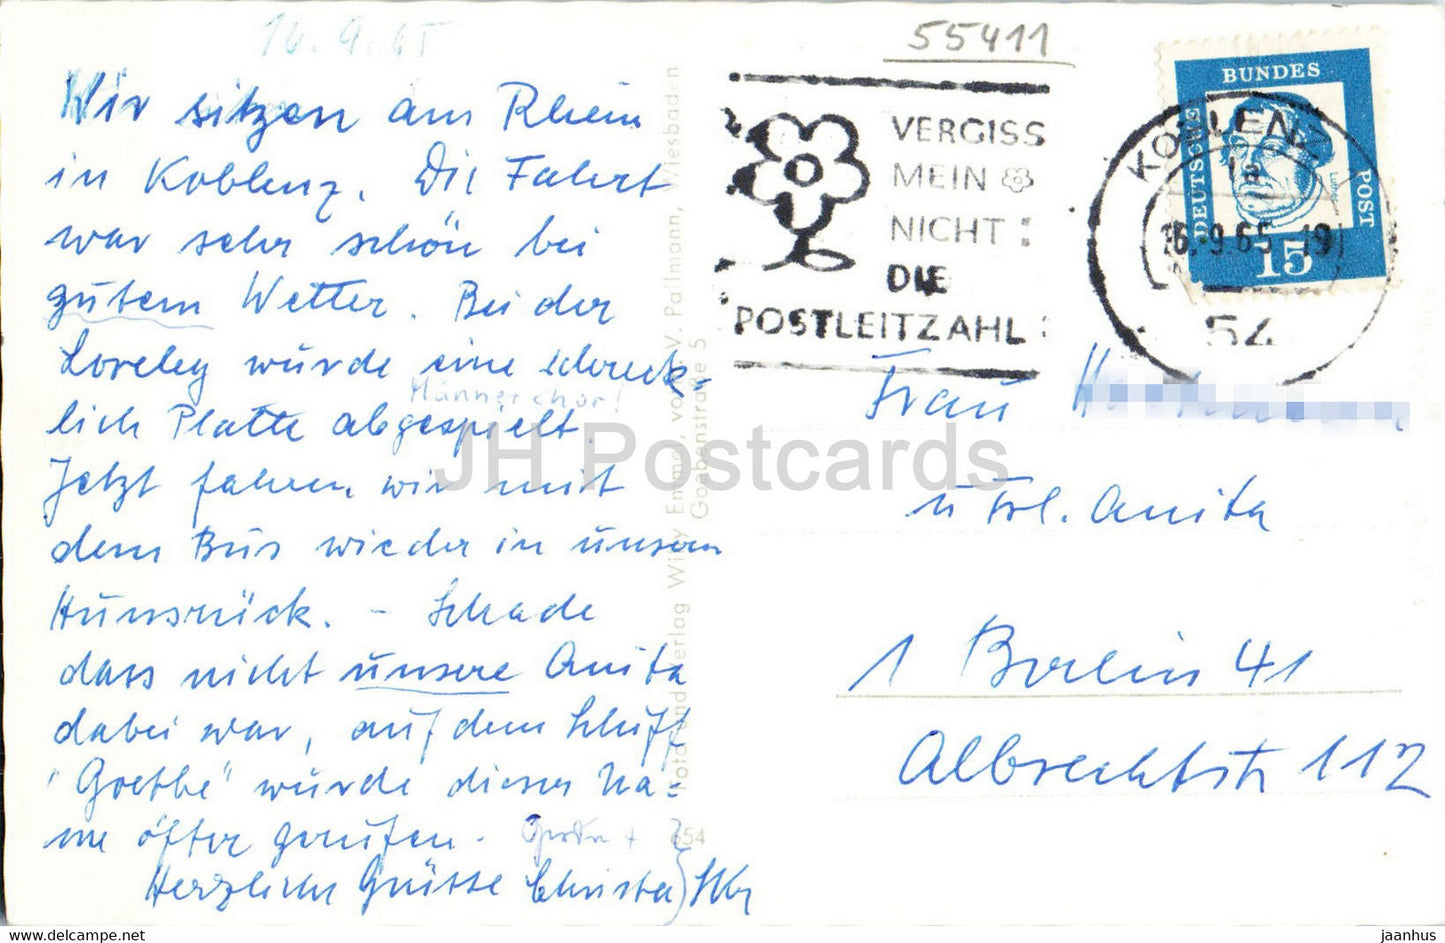 Bingen mit Bingerbruck - Mauseturm - Ruine Ehrenfels und Niederwalddenkmal - alte Postkarte - 1965 - Deutschland - gebraucht